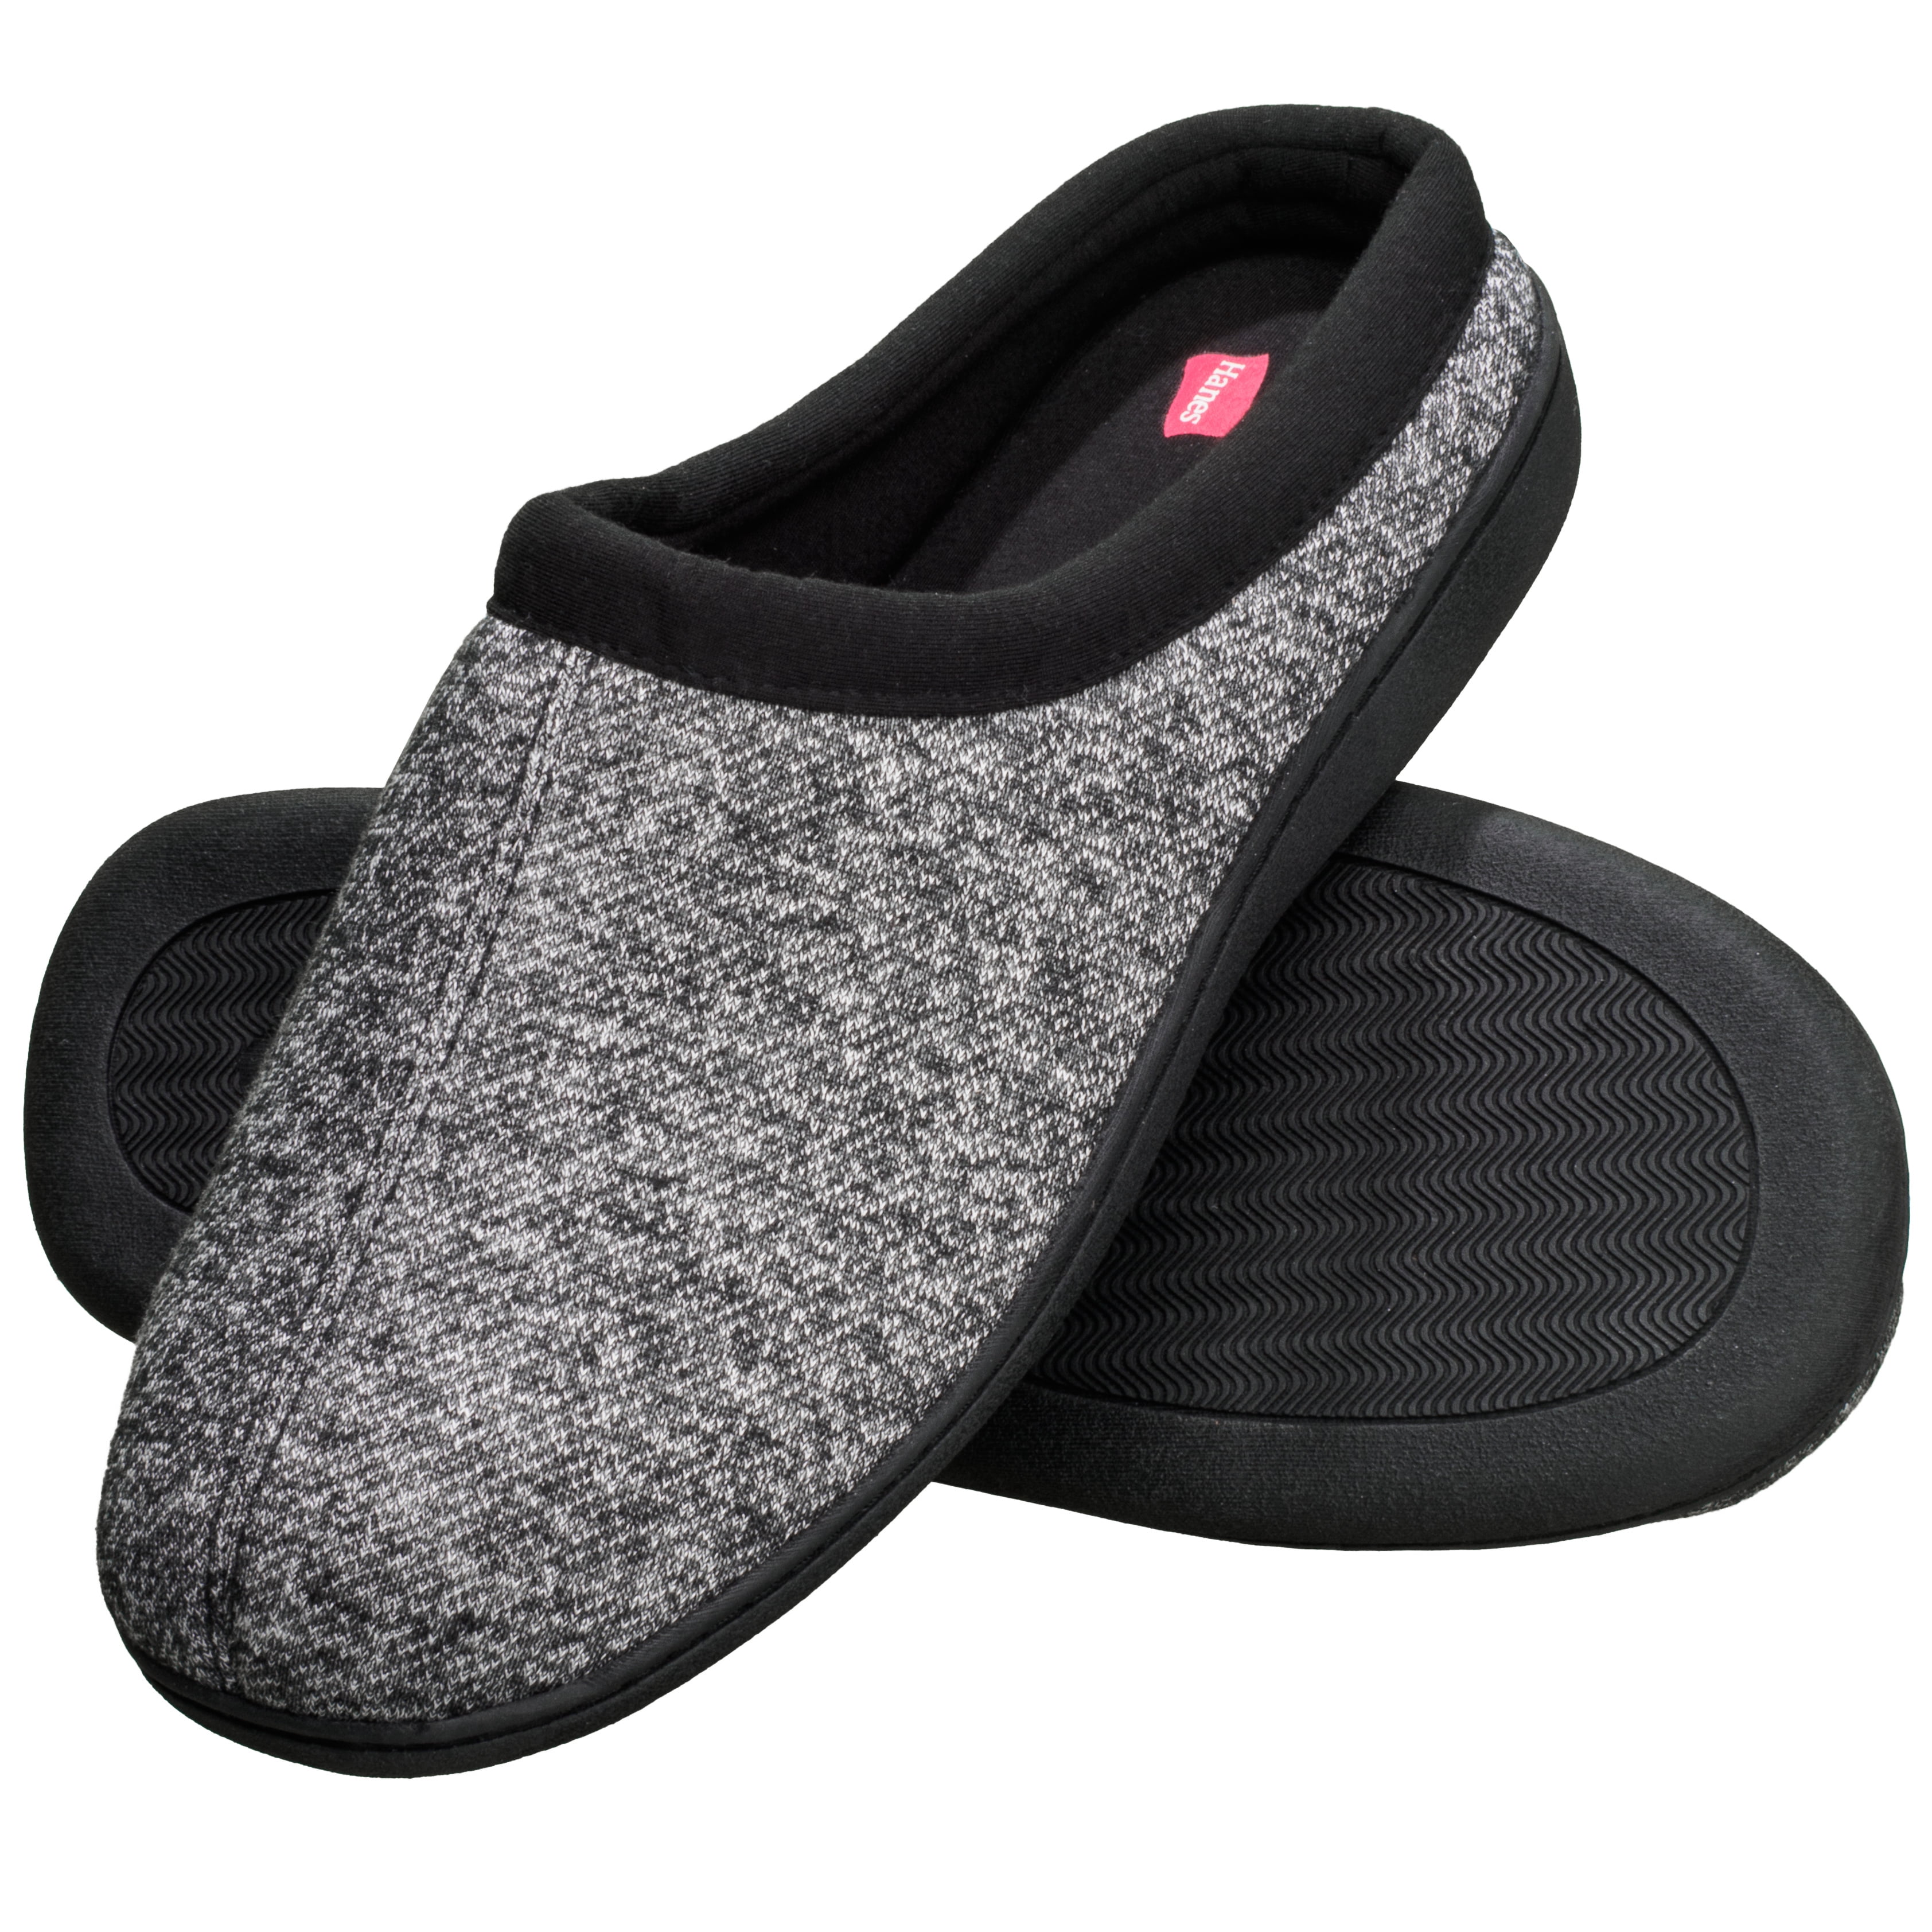 Men's Indoor/Outdoor Memory Foam Slippers New IN BOX!! 